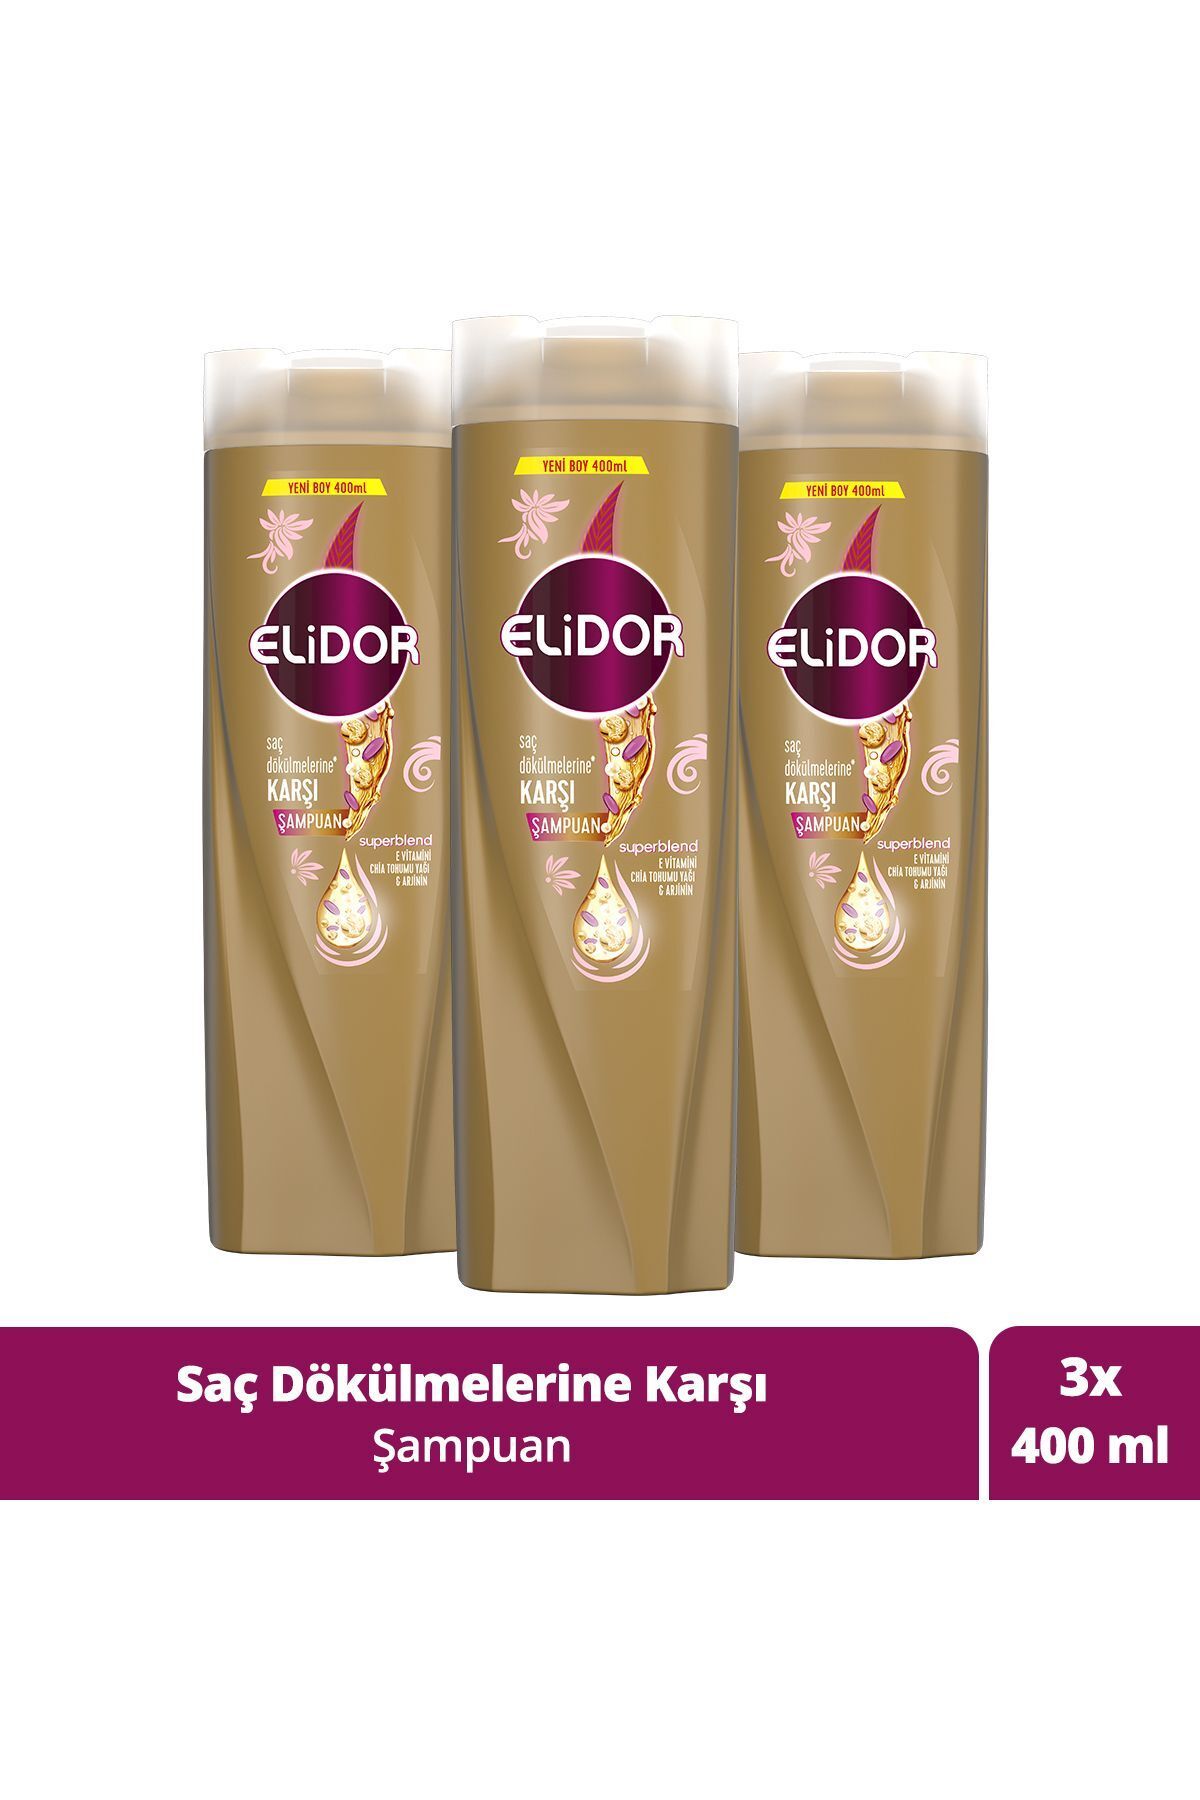 Elidor Superblend Saç Bakım Şampuanı Saç Dökülmelerine Karşı 400 ml X3 Adet